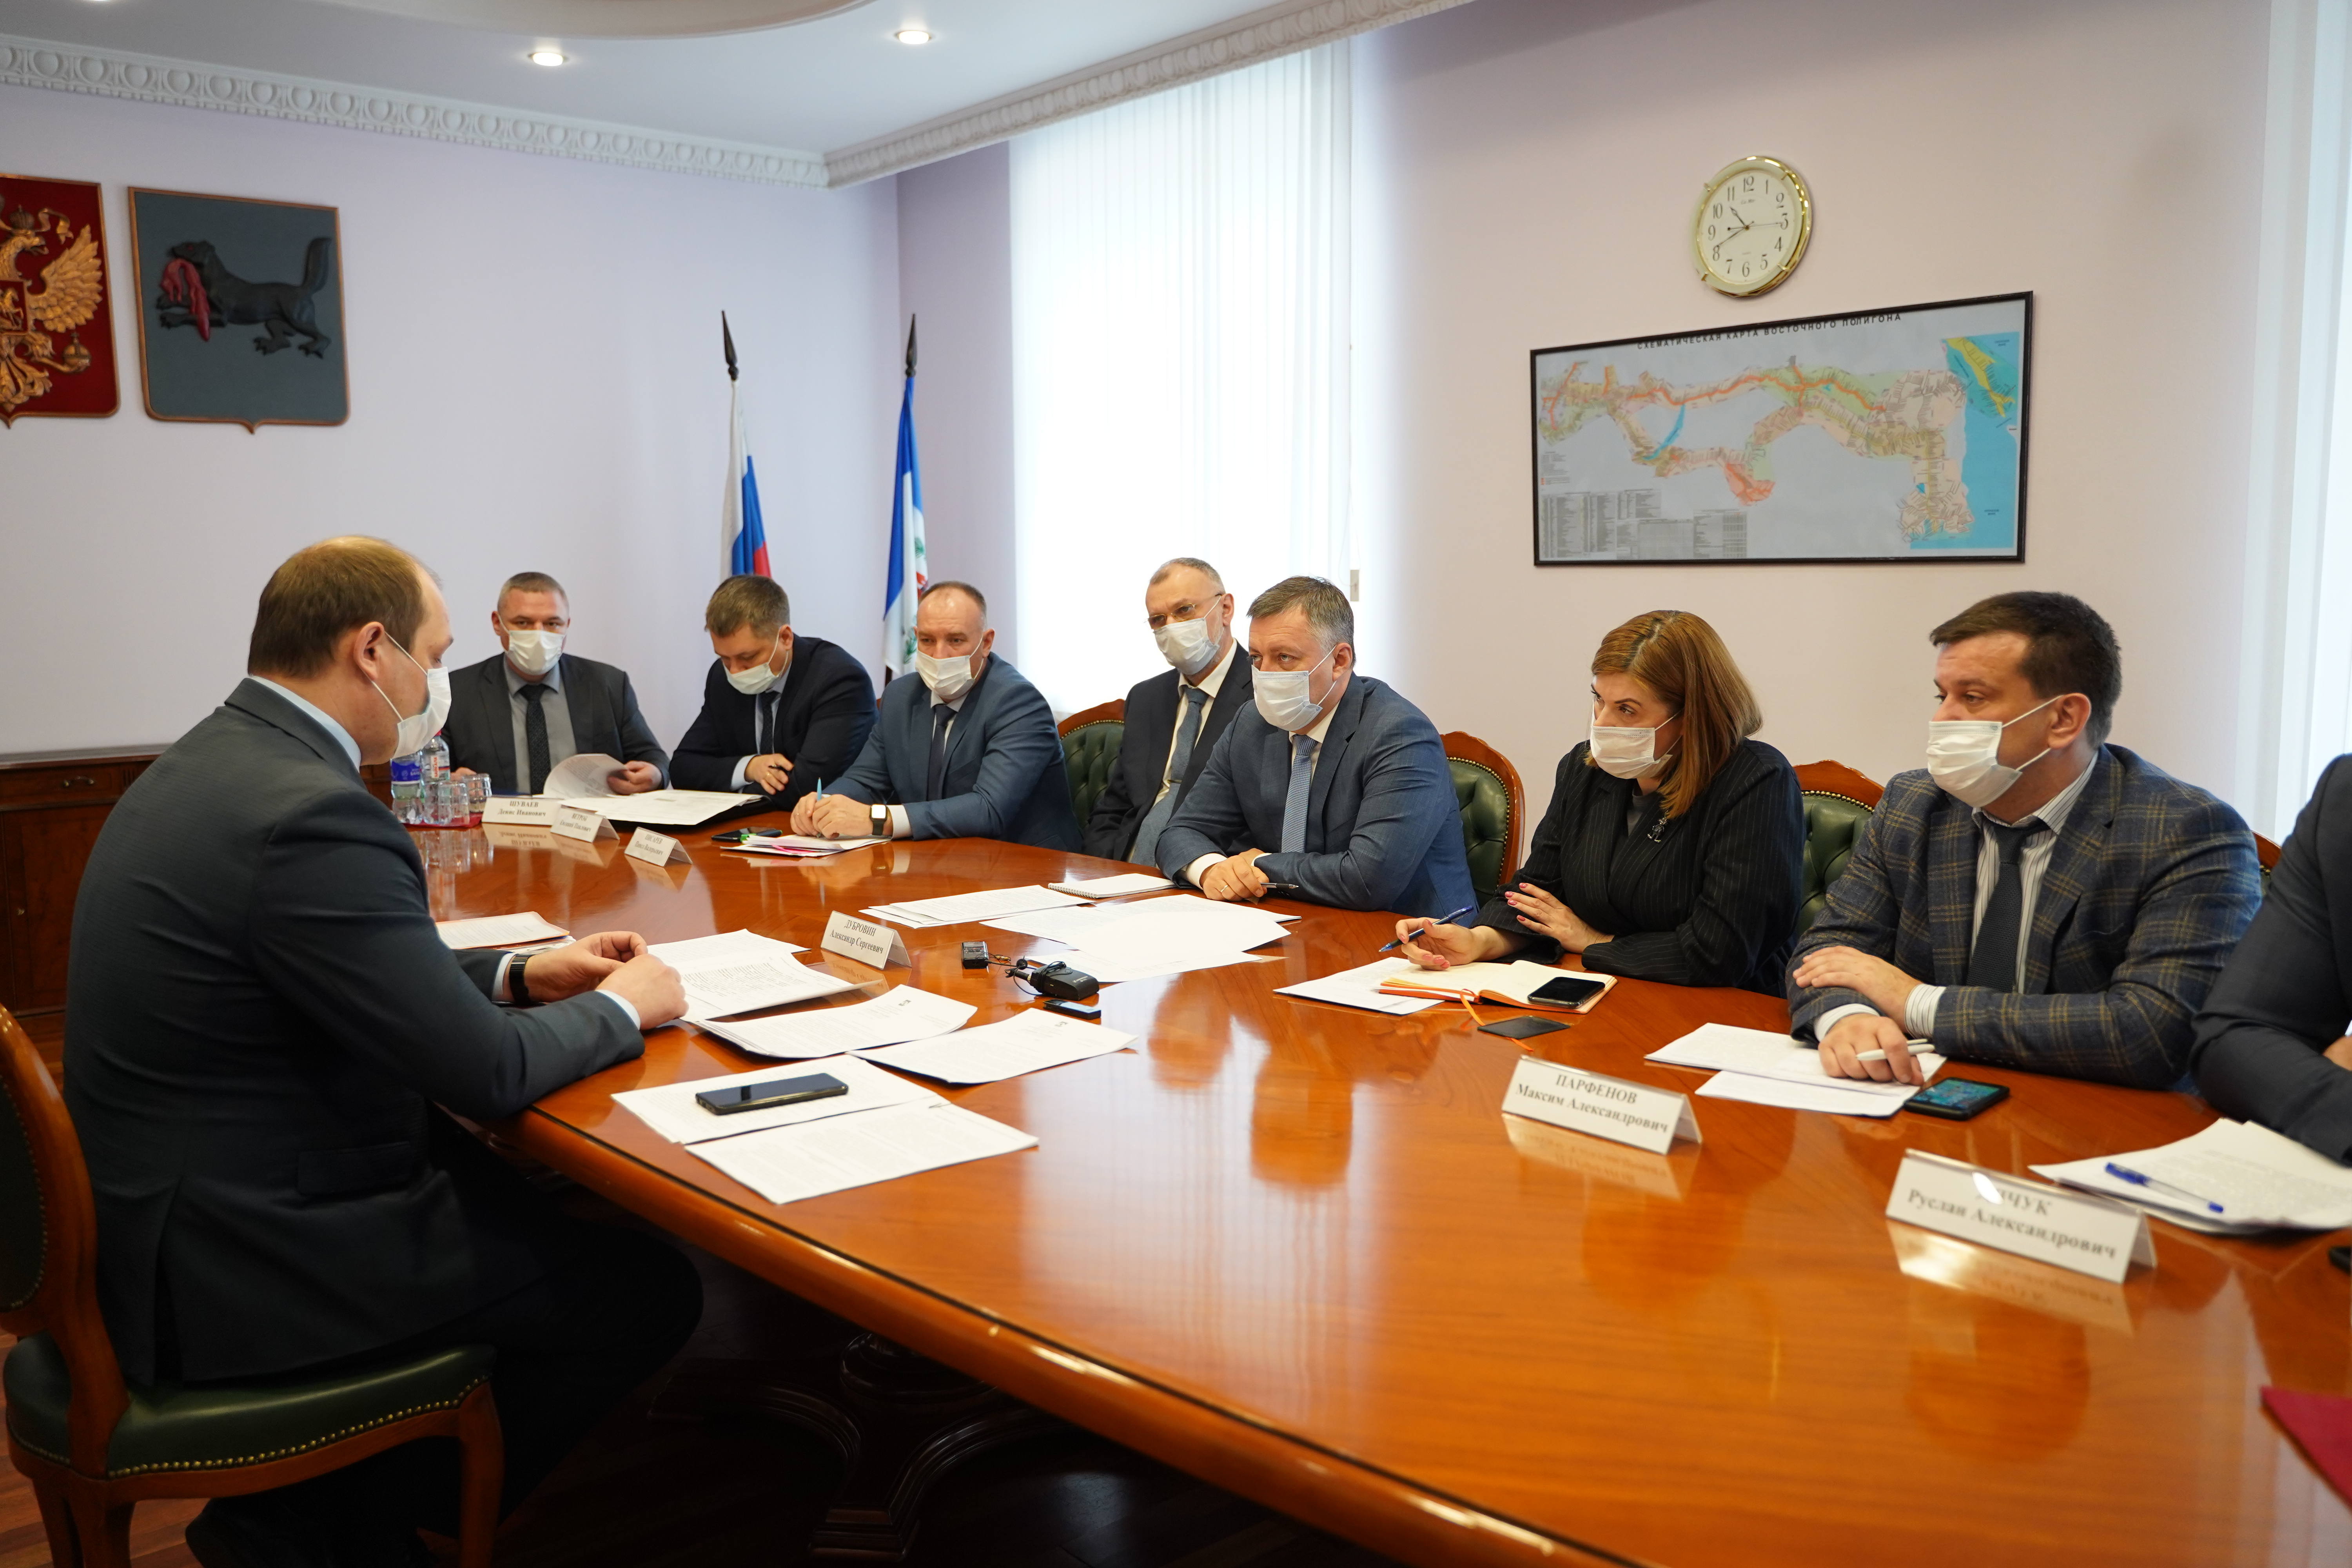 Мэр Братского района Александр Дубровин обсудил острые проблемы территории с Губернатором Иркутской области